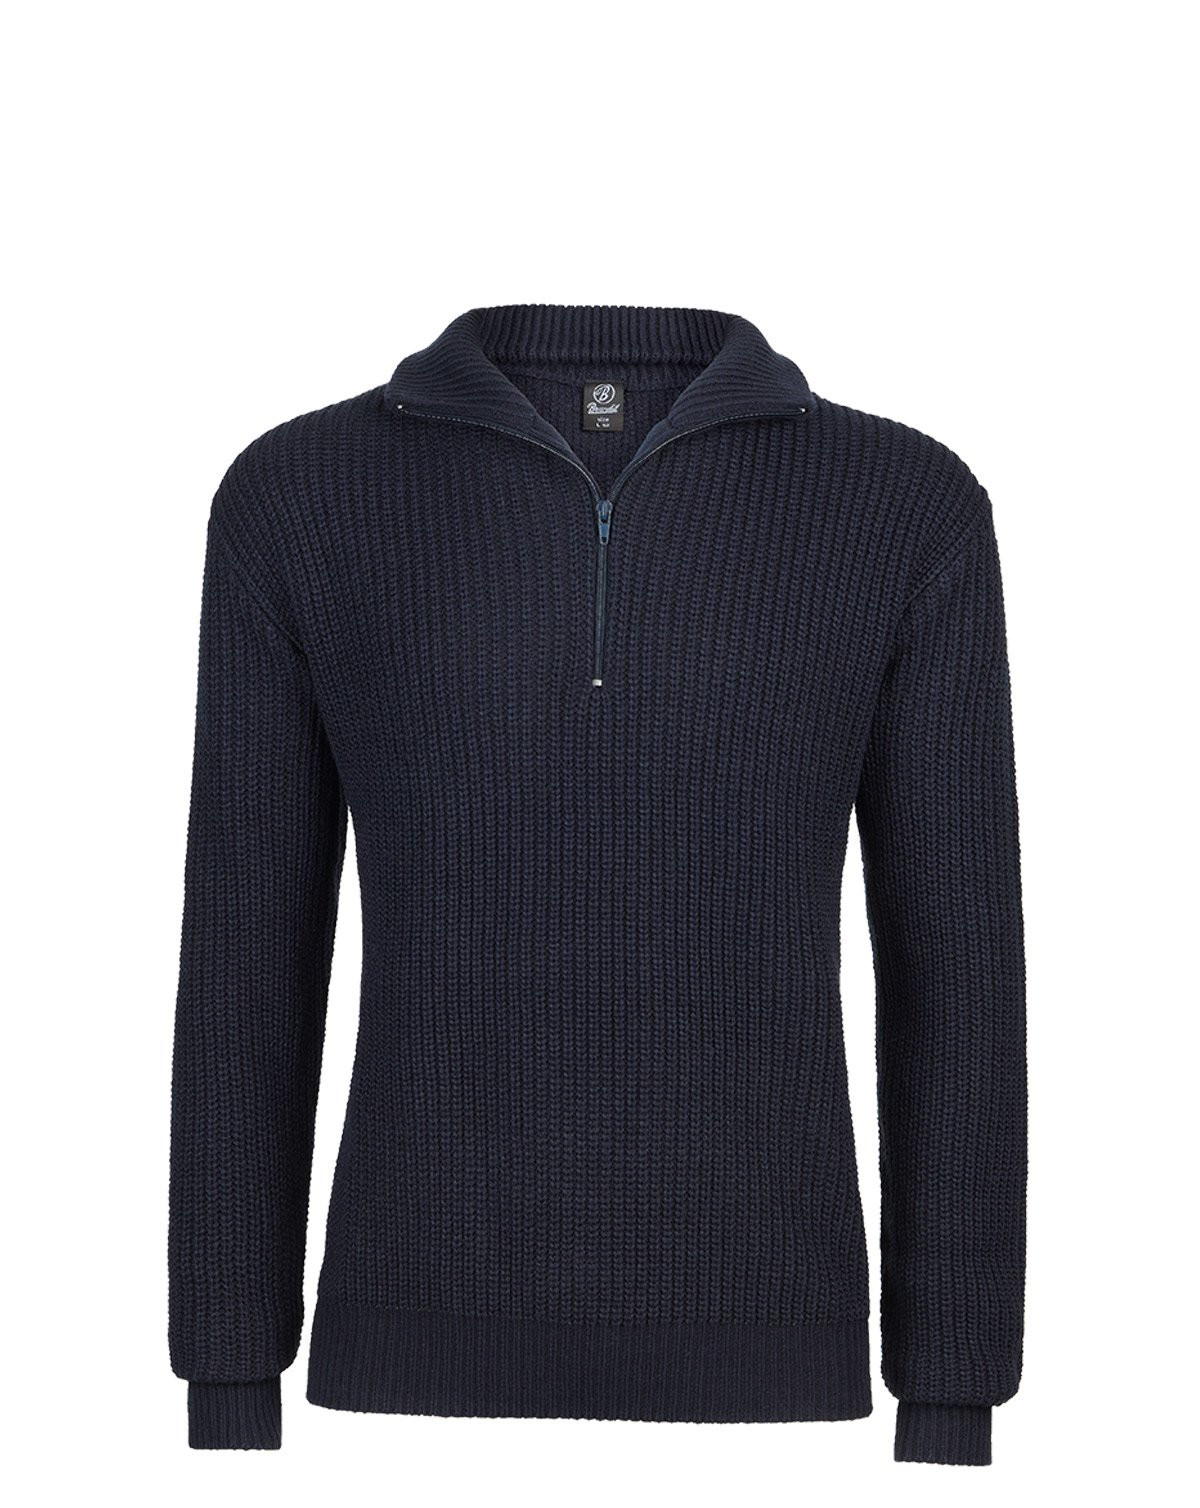 Brandit Marine Pullover Troyer Sweater (Navy, S)